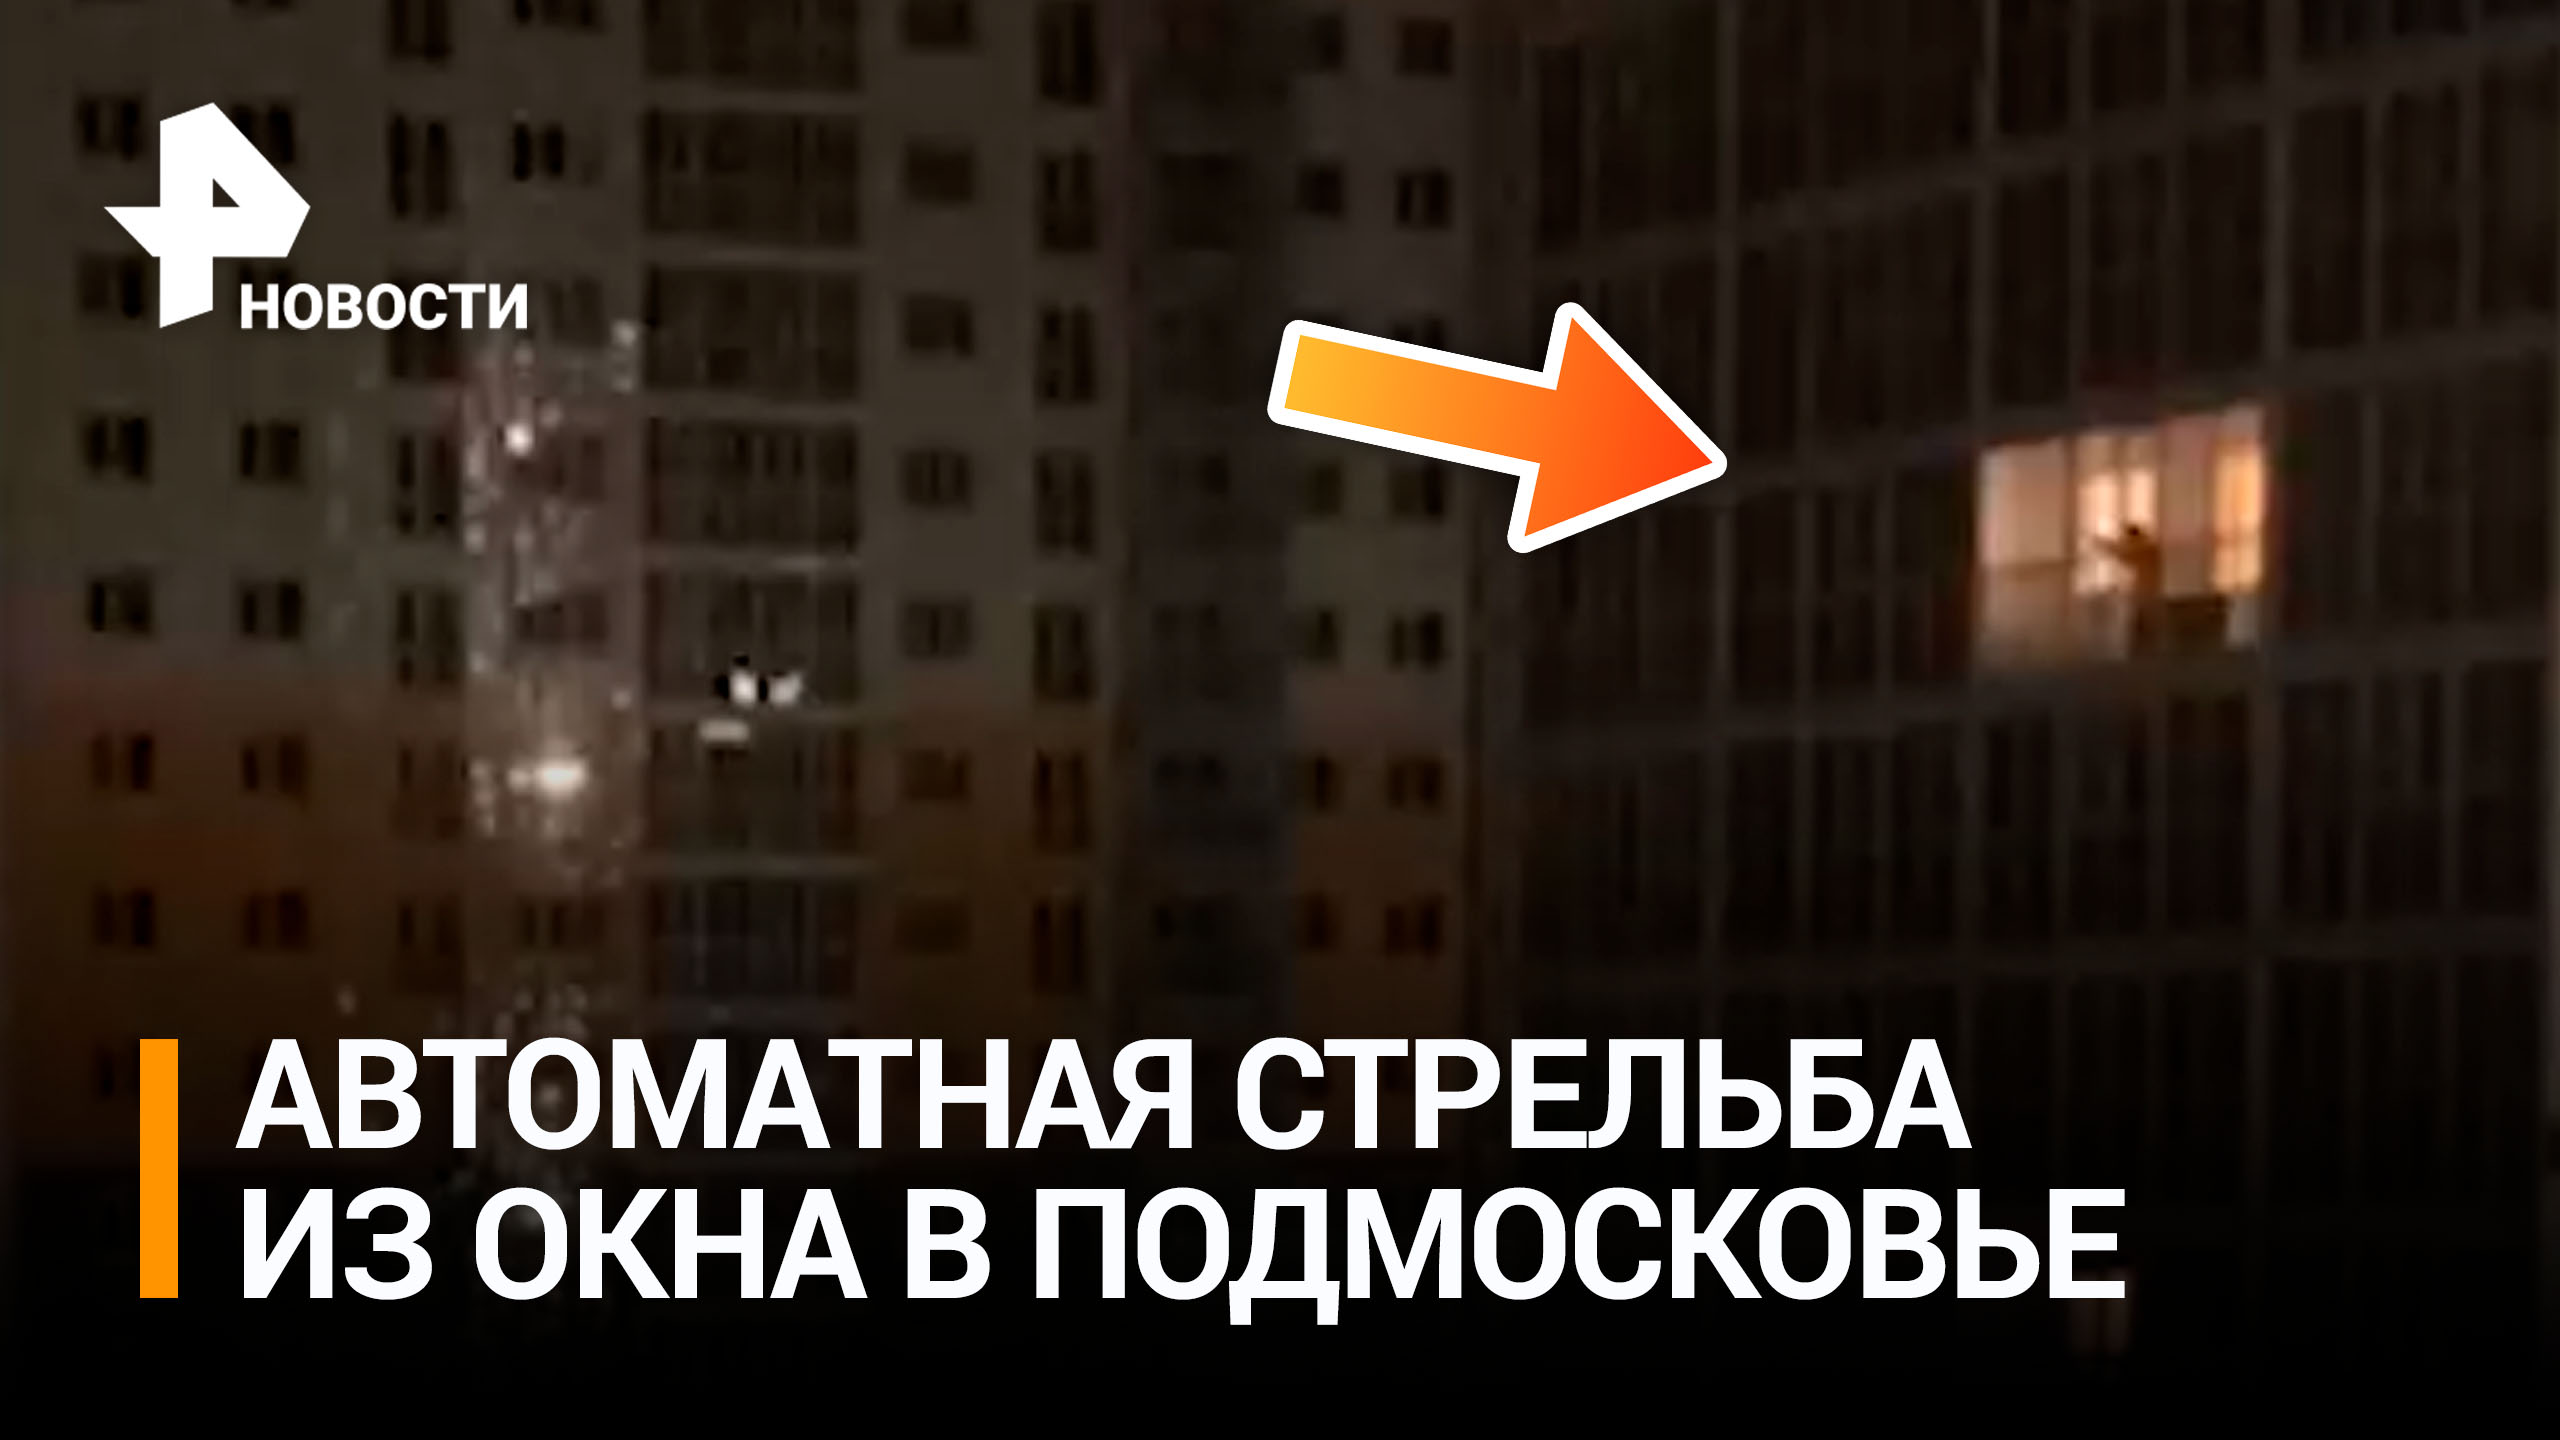 Мужчина открыл стрельбу из автомата из окна многоэтажки в Подмосковье / РЕН Новости